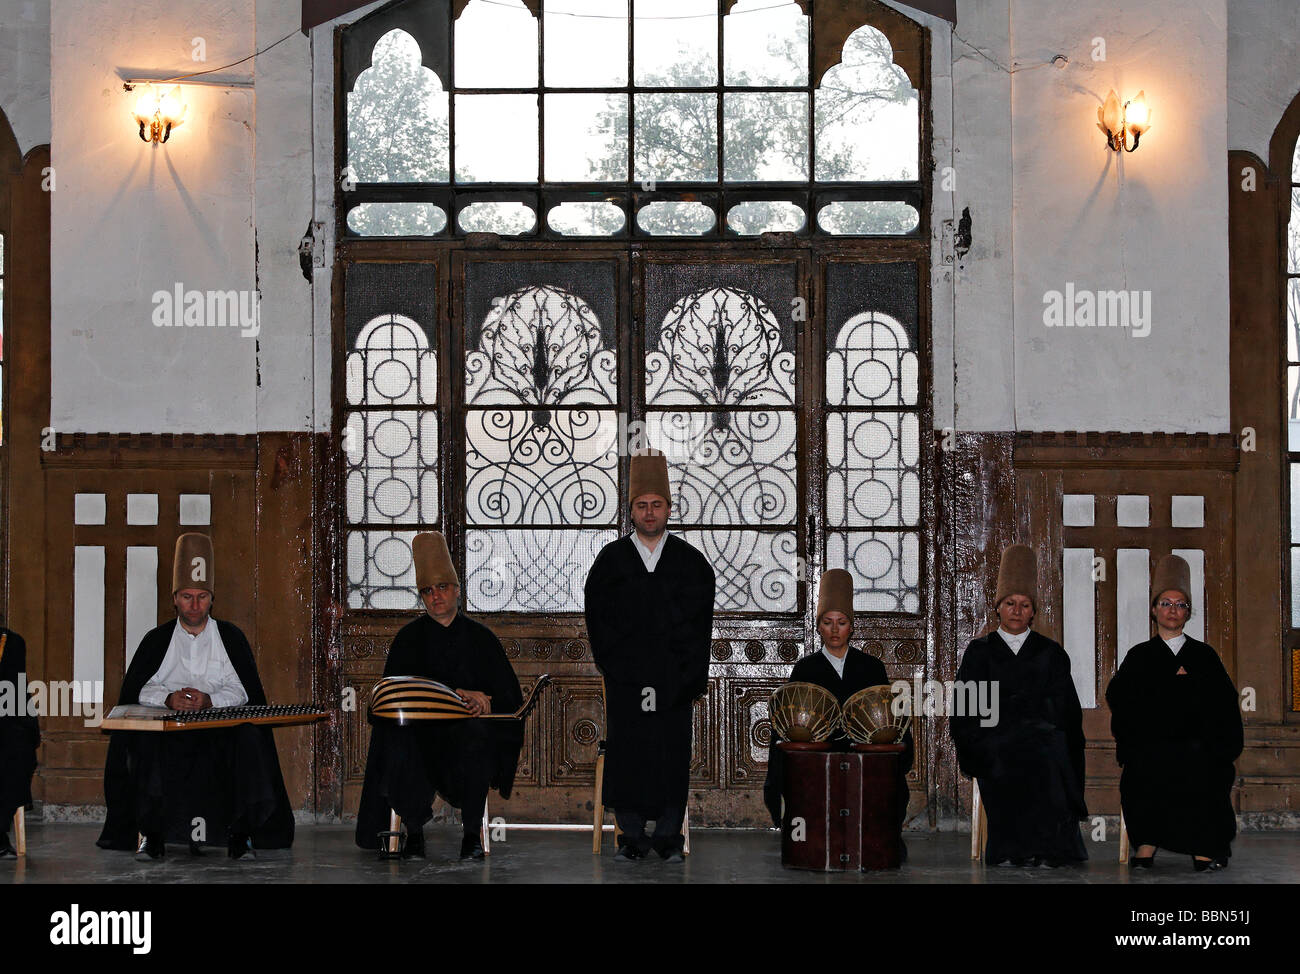 Groupe de musique soufie, cérémonie de la sema derviches tourneurs de l'ordre des Mevlevi, historique gare Sirkeci, Istanbul, Turquie Banque D'Images